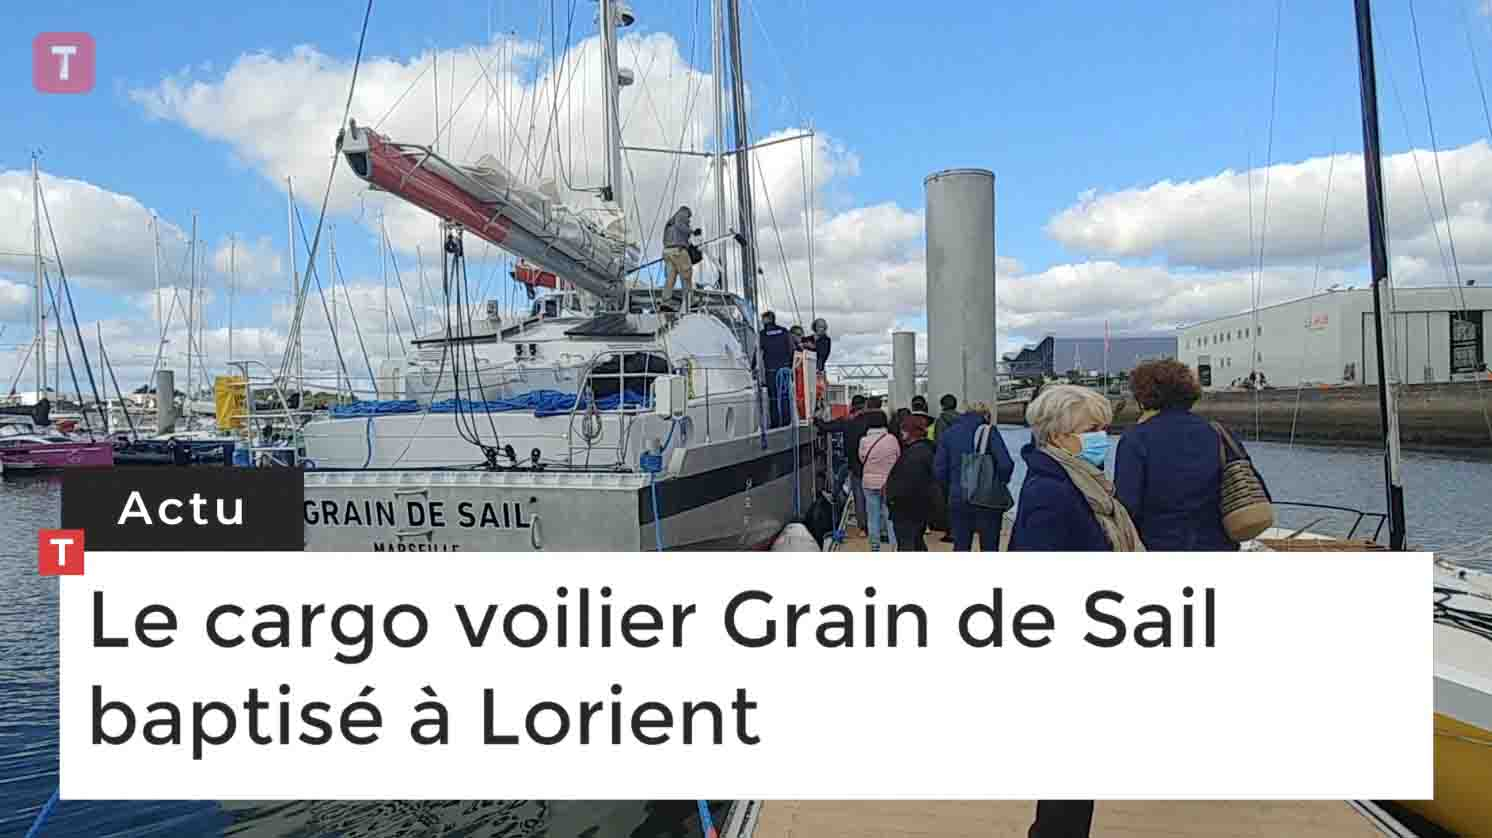 Le cargo voilier Grain de Sail baptisé à Lorient (Le Télégramme)